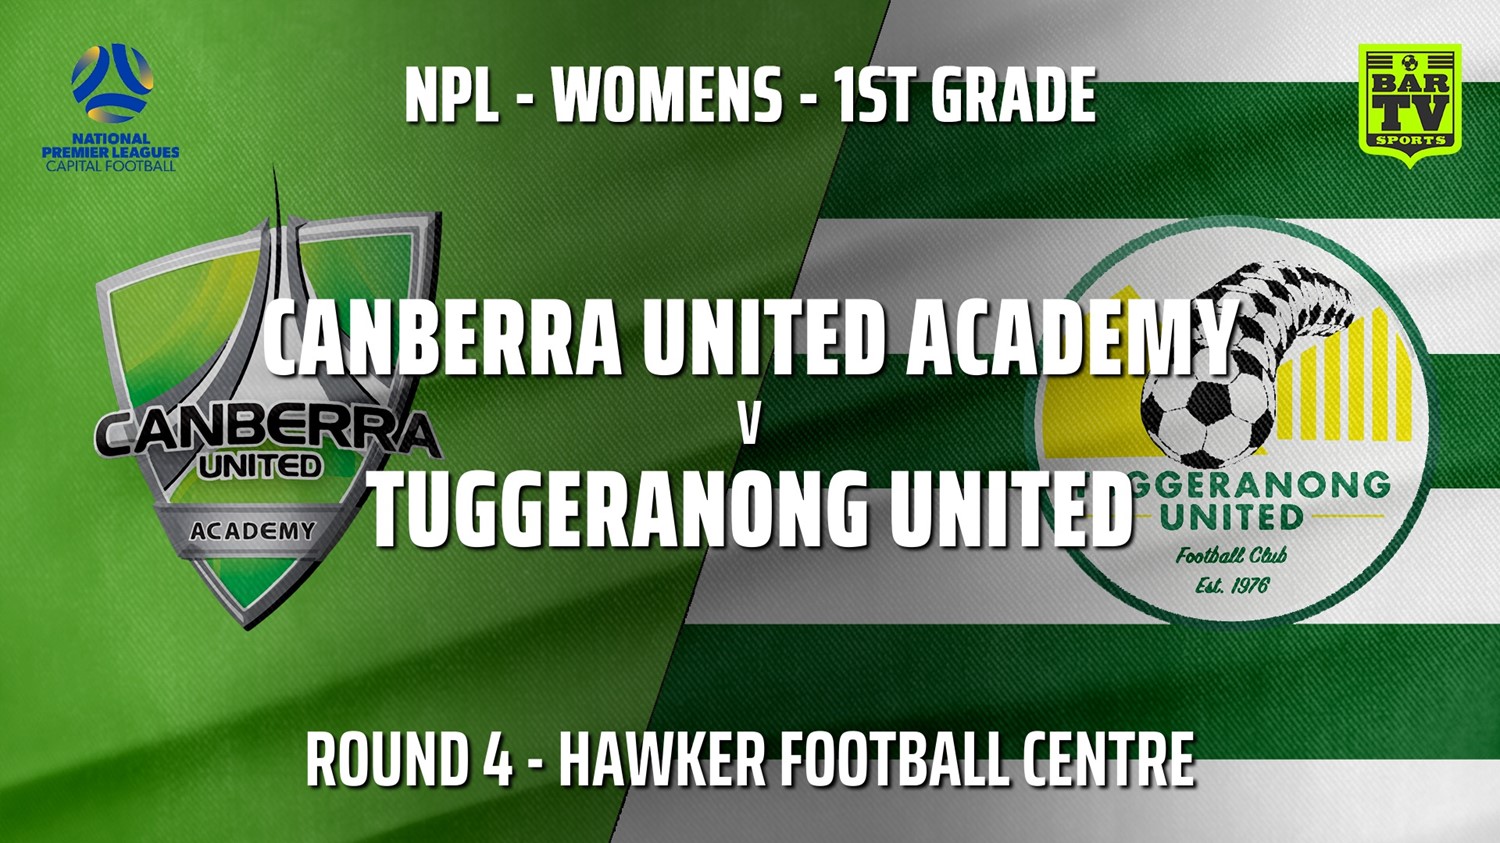 210502-NPLW - Capital Round 4 - Canberra United Academy v Tuggeranong United FC (women) Slate Image